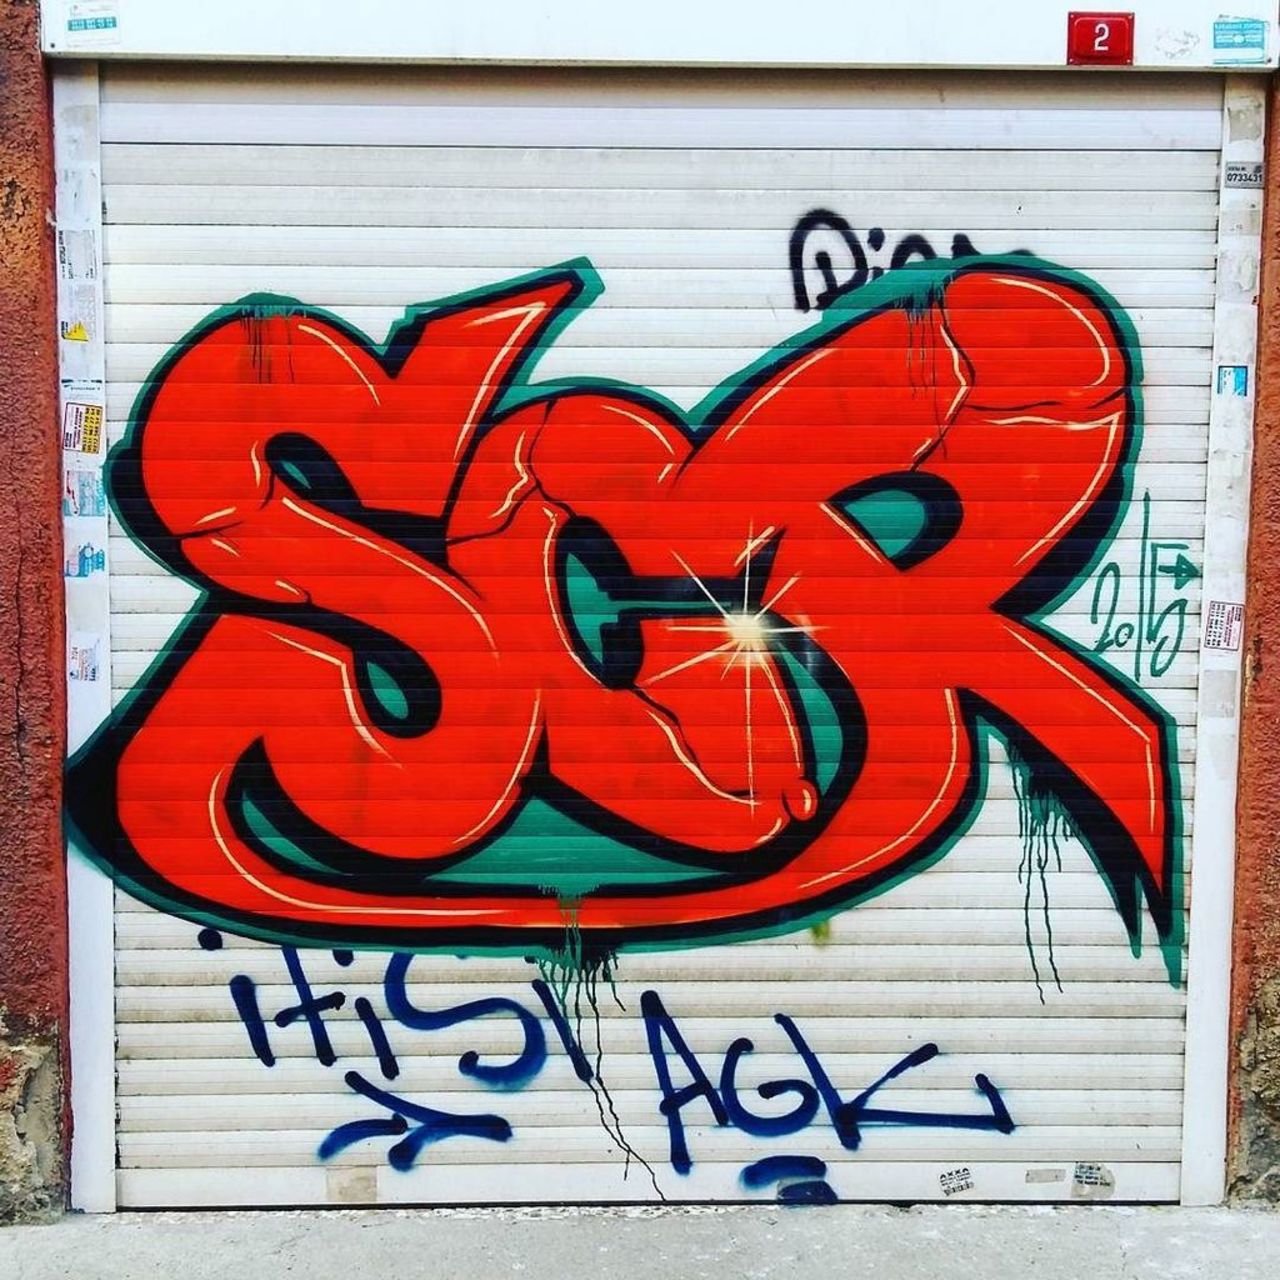 By #scrcrew @dsb_graff #dsb_graff @rsa_graffiti #ingf@streetawesome #streetart #urbanart #graffitiart #graffiti #in… https://t.co/tJkoqo5LzD